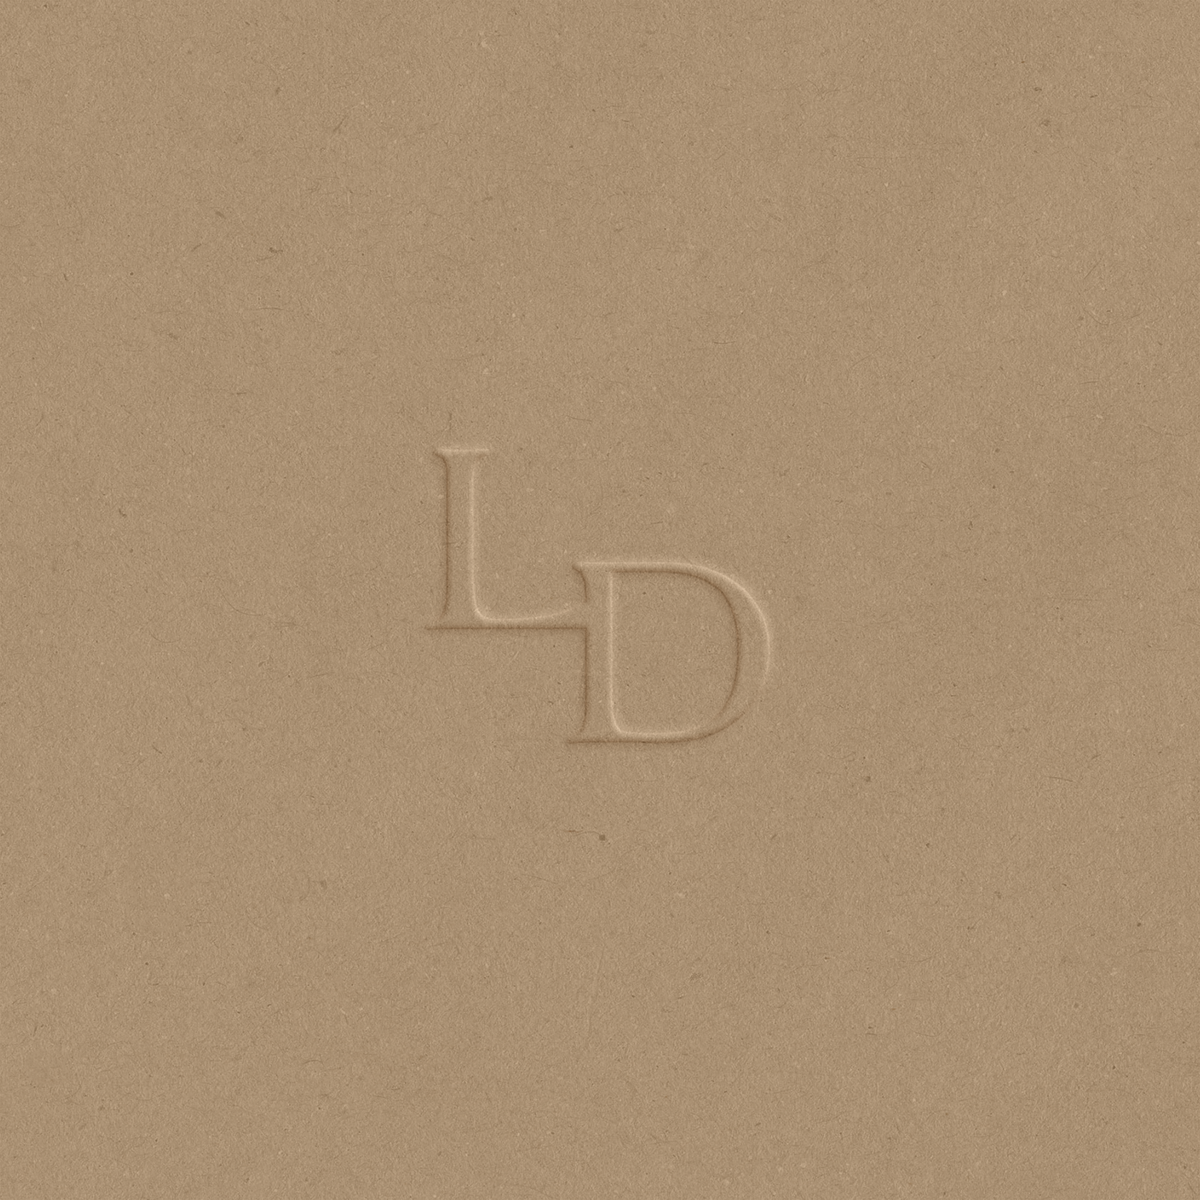 LDA brand mark mockup